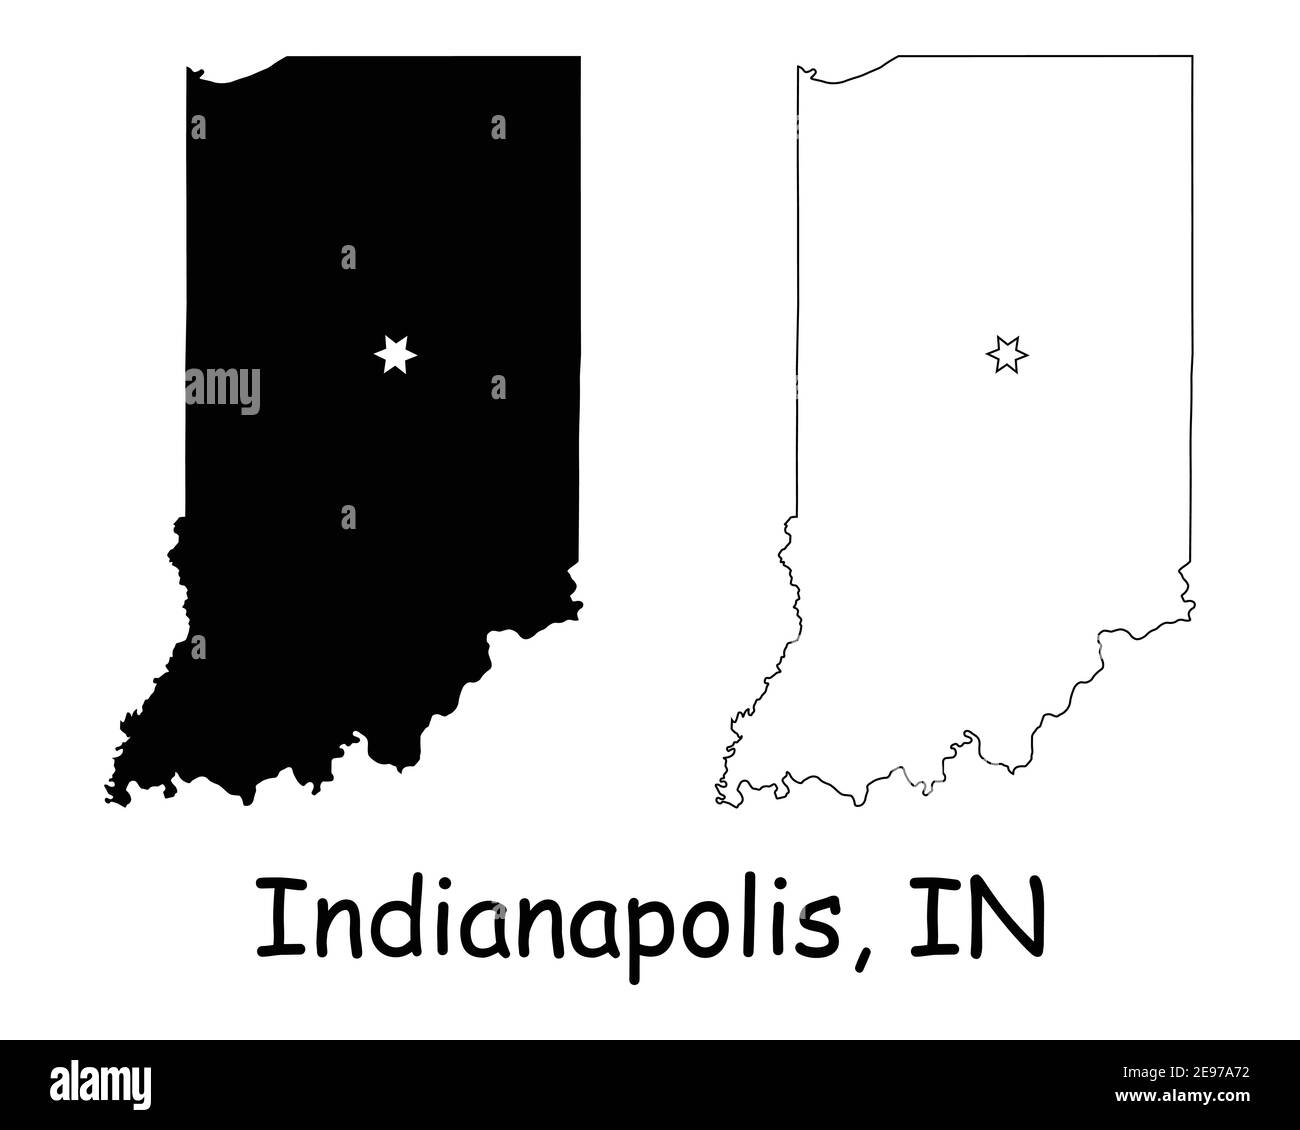 Indiana IN mappe di stato USA con la capitale City Star a Indianapolis. Silhouette nera e profilo isolato su sfondo bianco. Vettore EPS Illustrazione Vettoriale